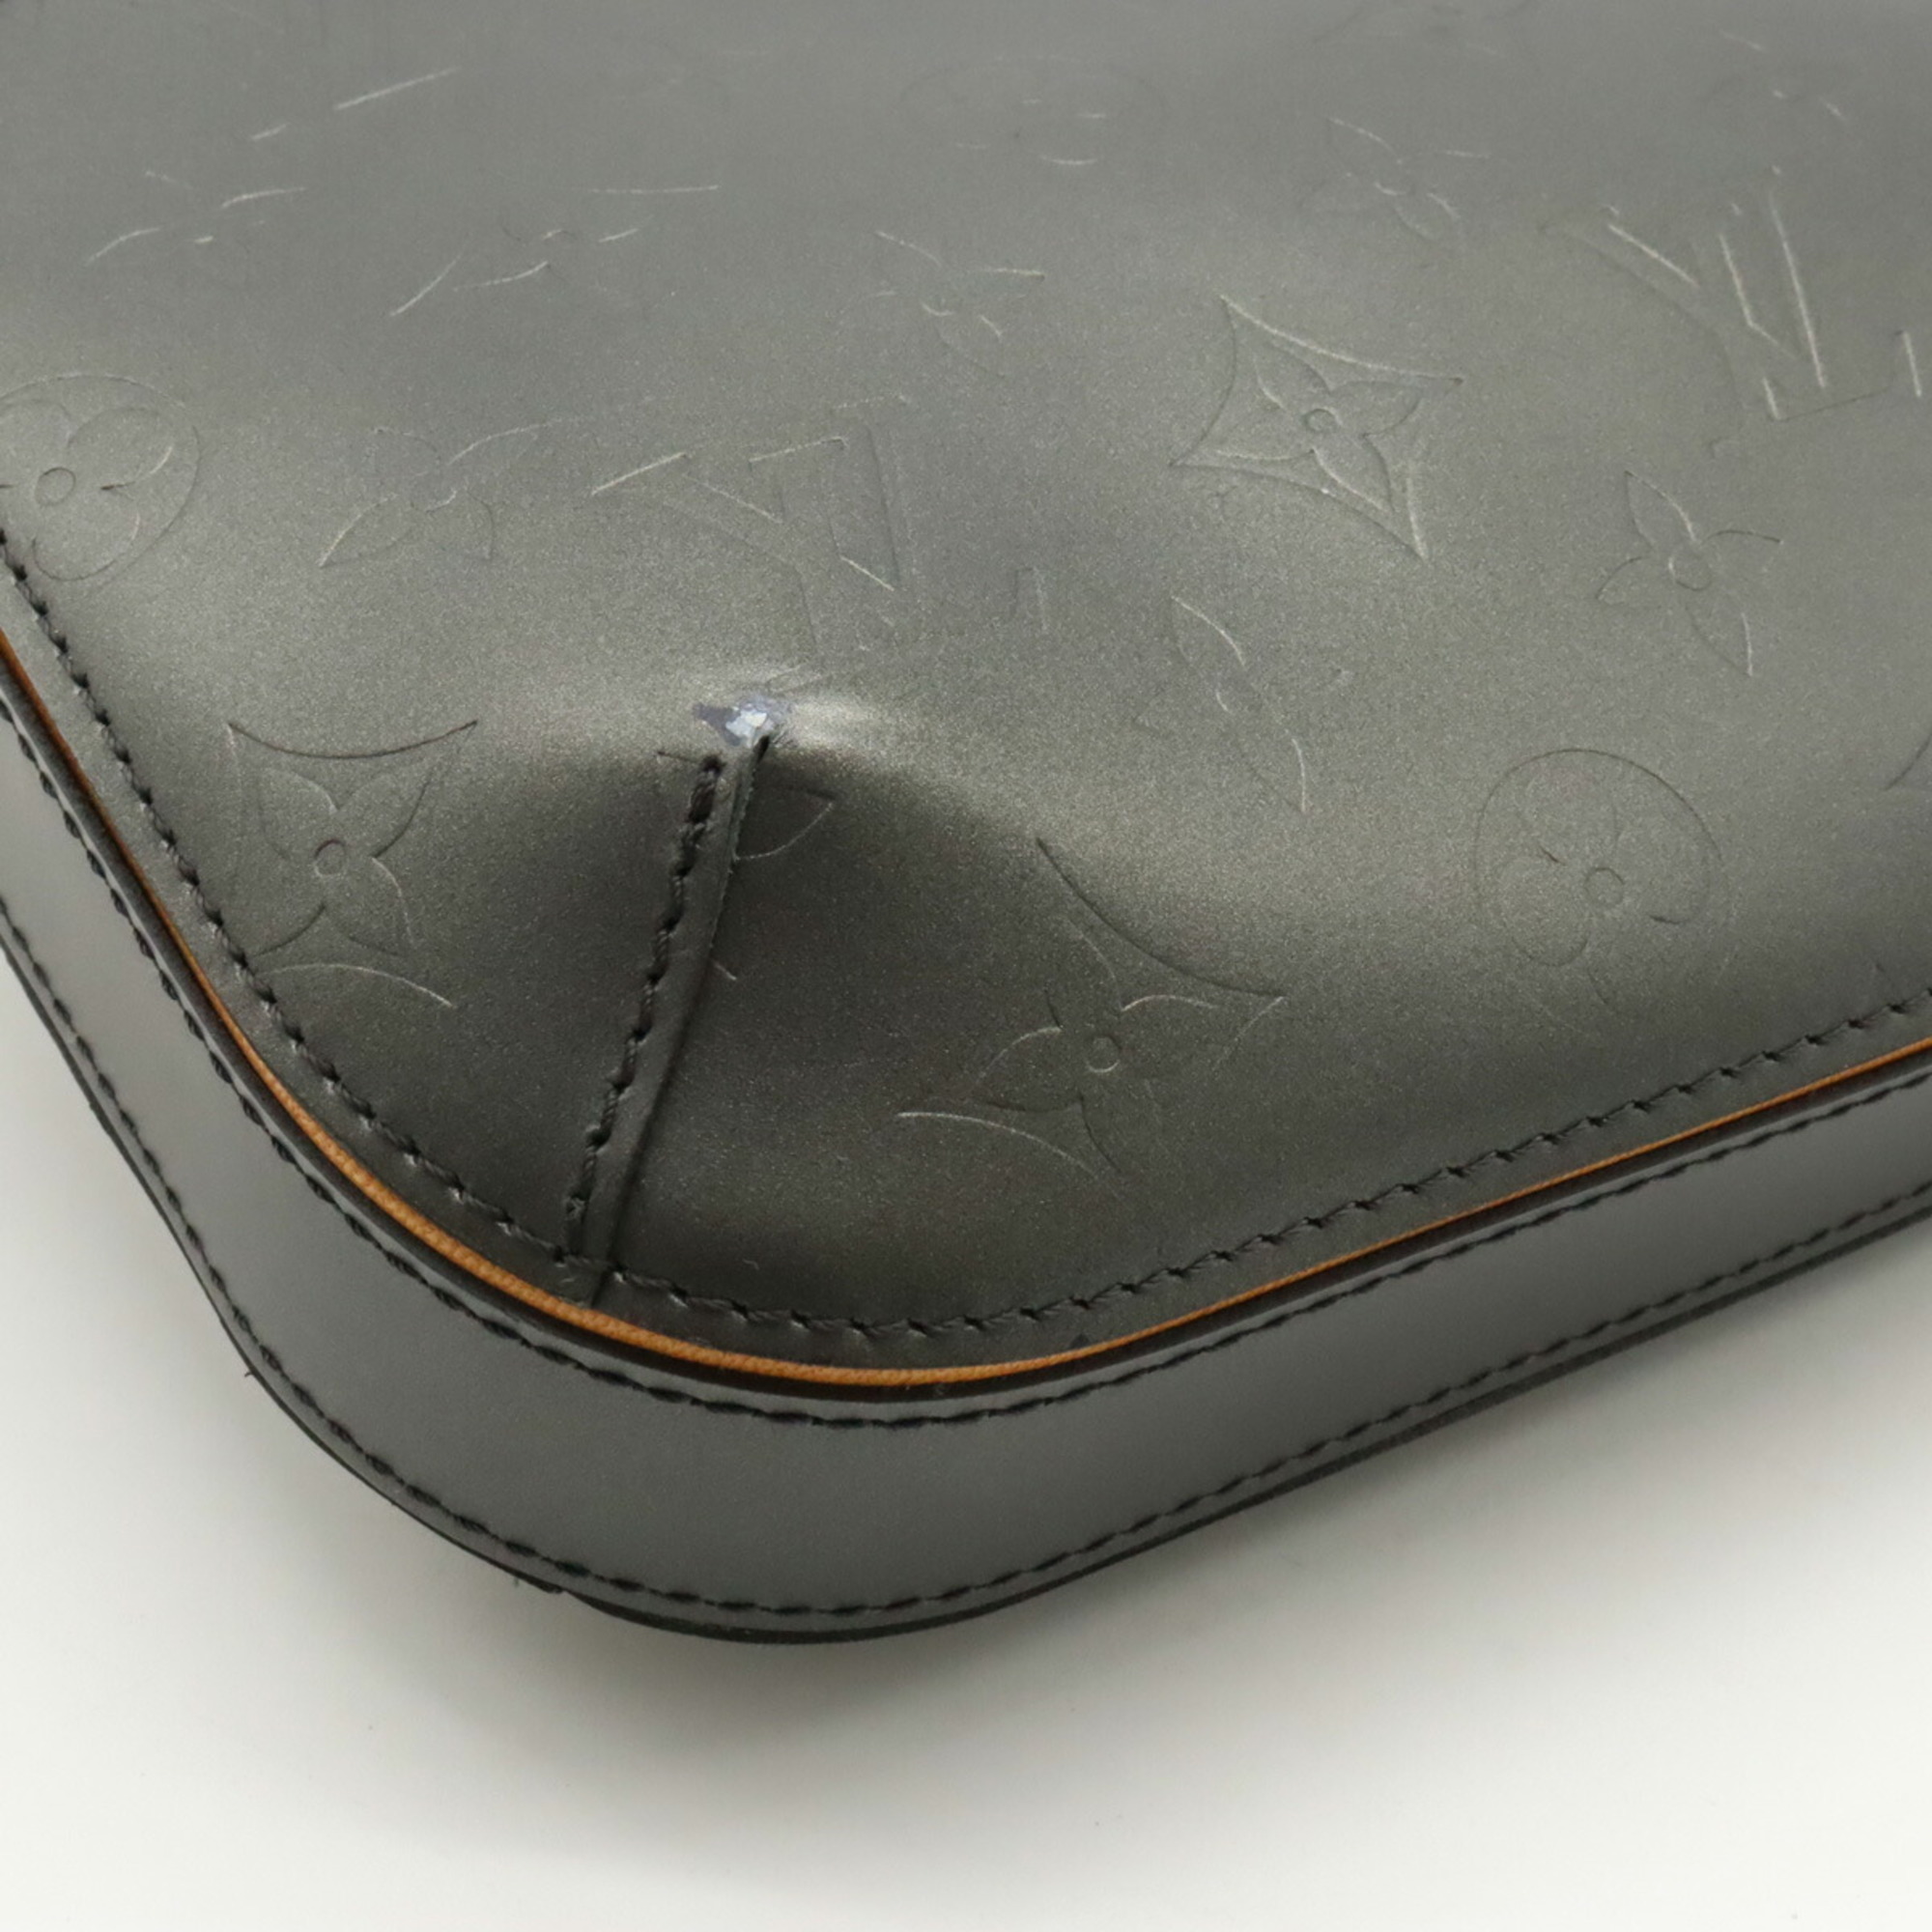 LOUIS VUITTON Louis Vuitton Monogram Matte Fowler Shoulder Bag Leather Noir Black M55142